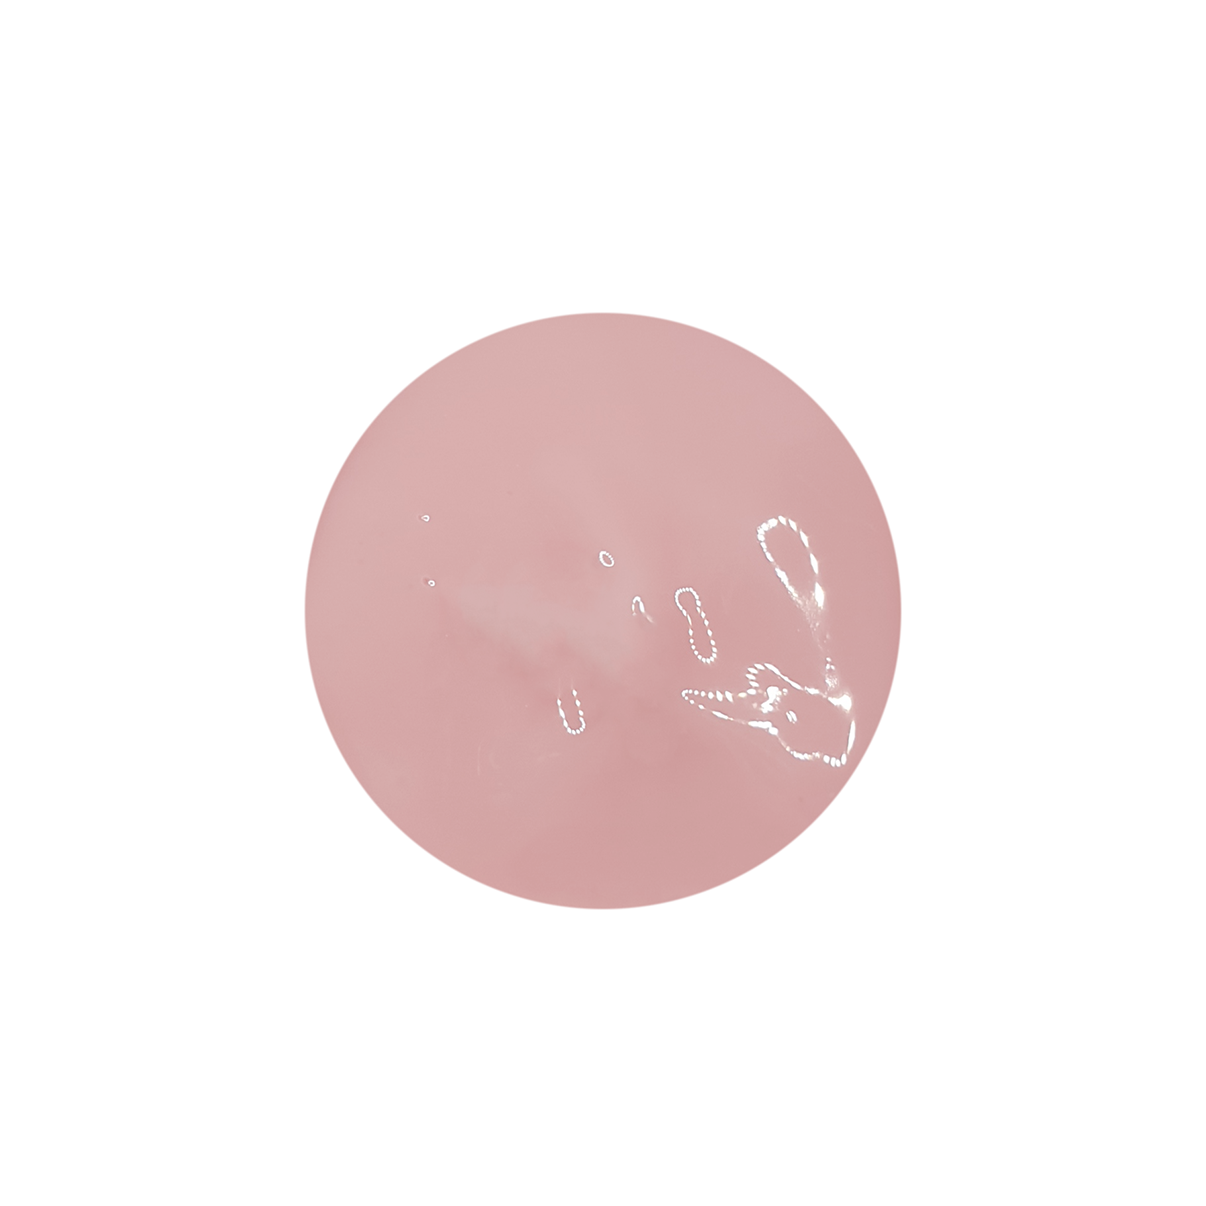 Aufbaugel thixotrop Pastel Pink 15ml